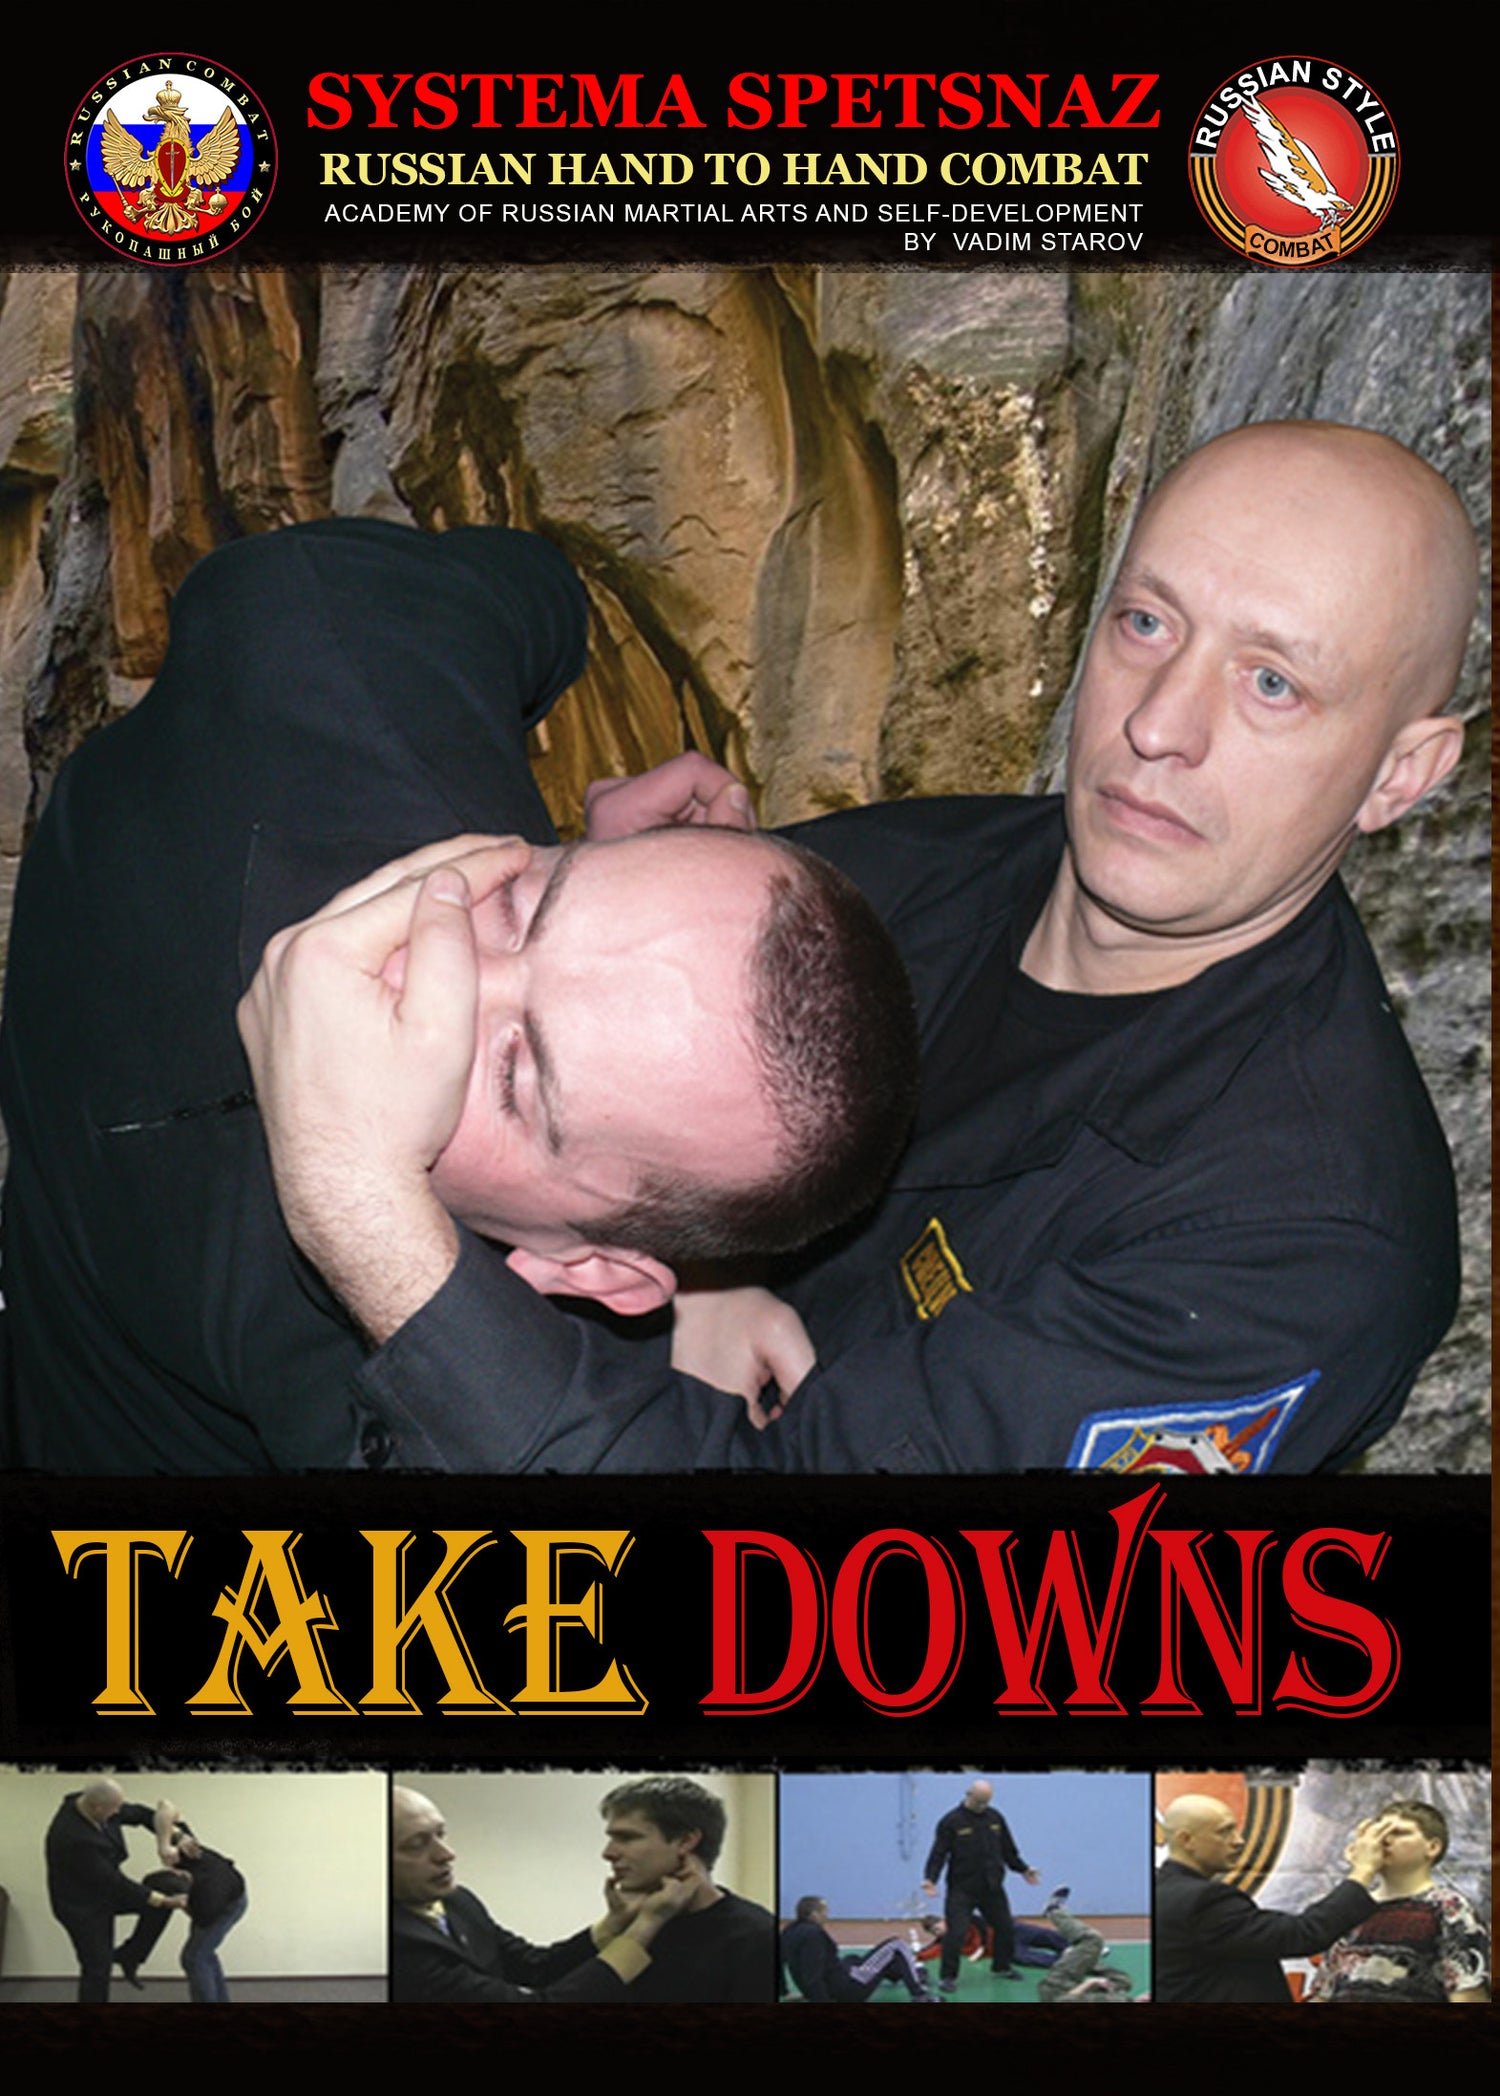 Systema Spetsnaz DVD #8 - Takedowns - Budovideos Inc